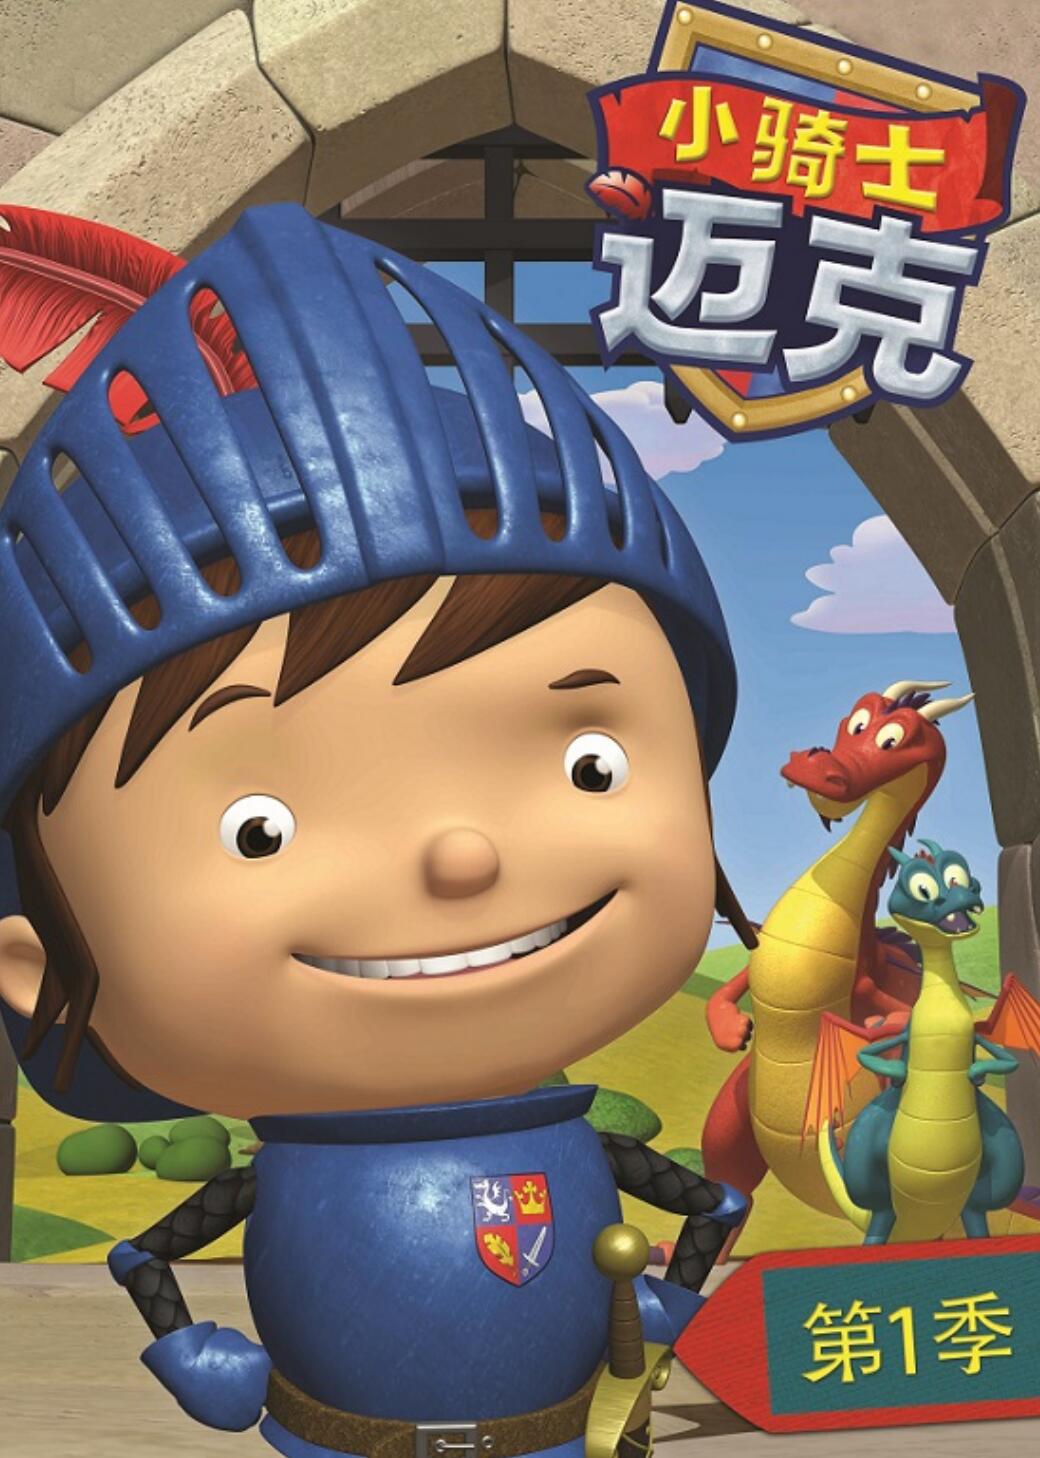 儿童冒险搞笑动画片《小骑士迈克》国语版第一季全52集下载 mp4高清720p